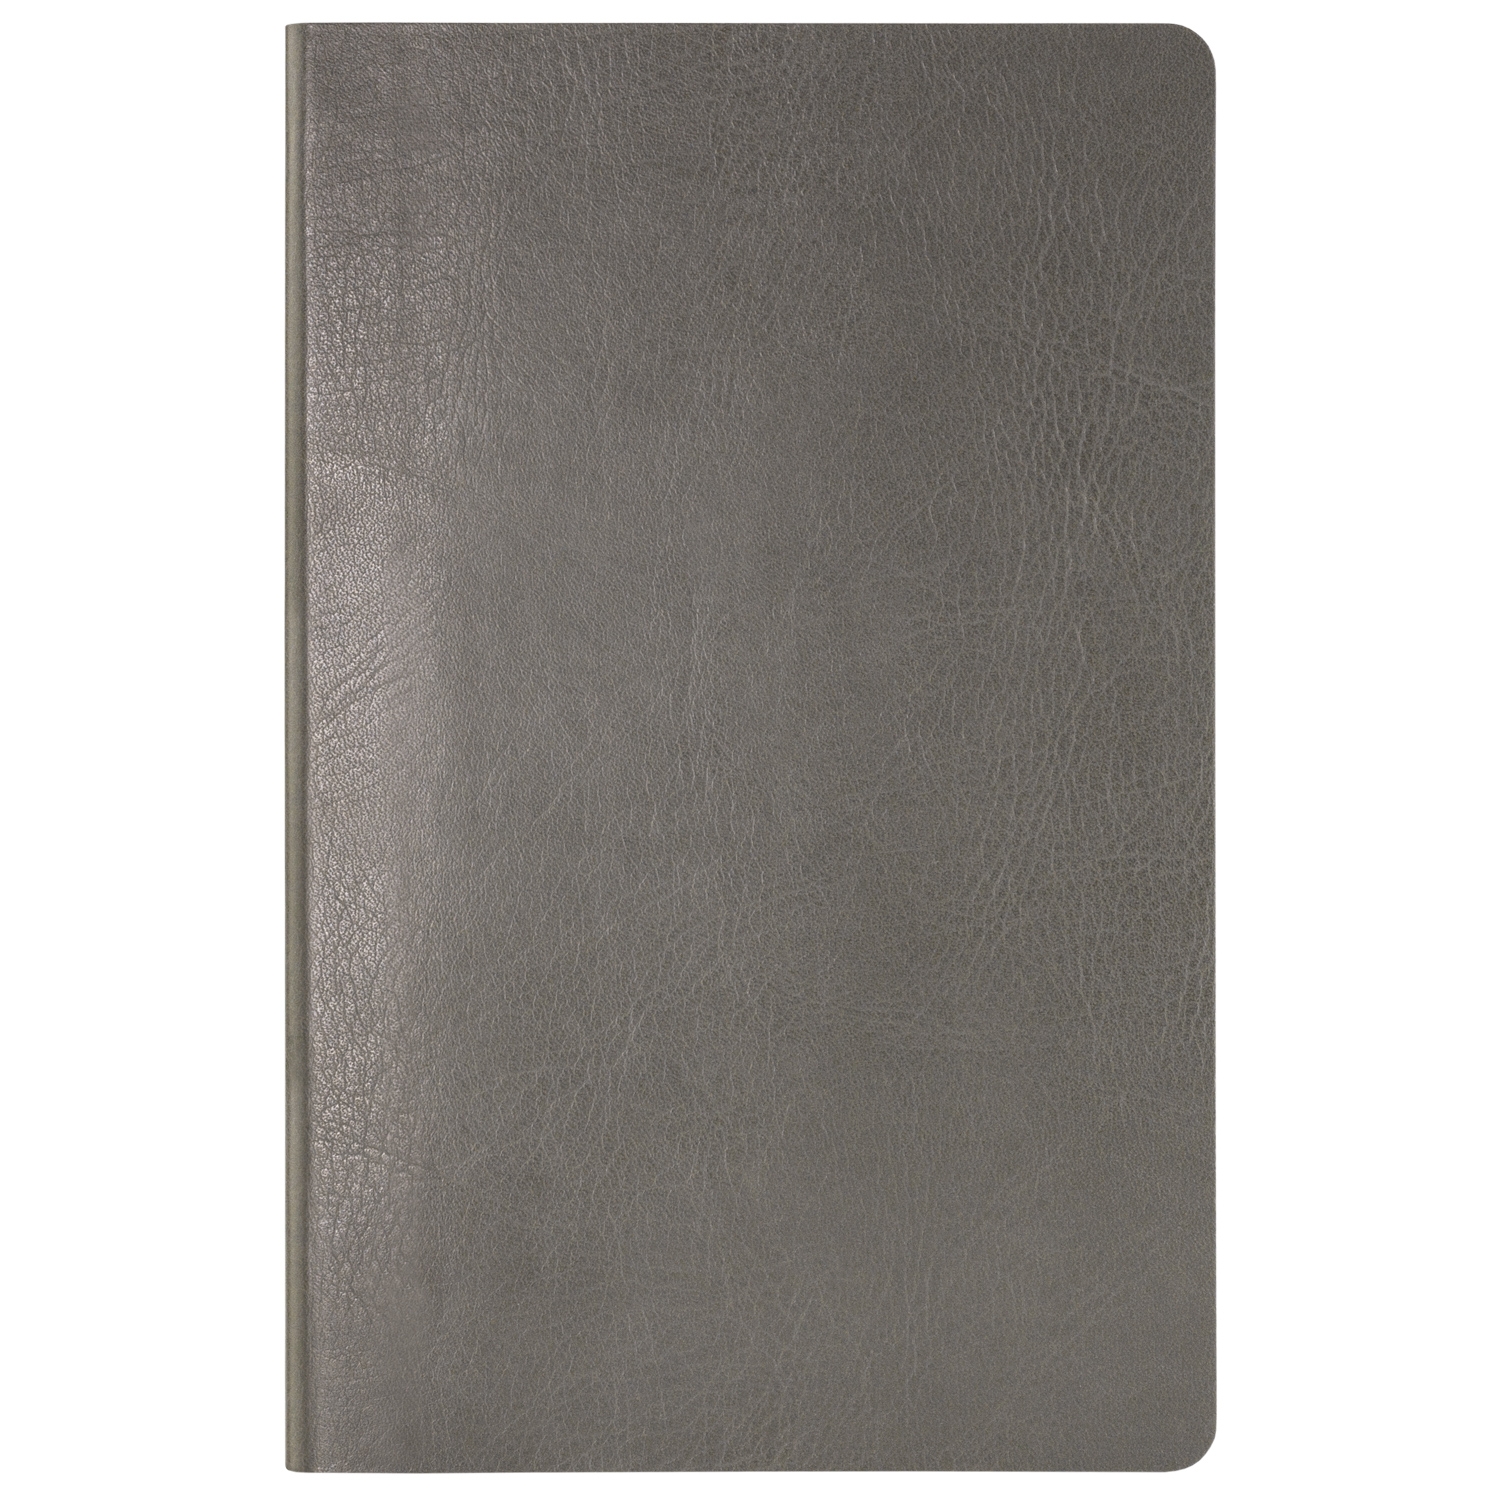 Ежедневник Slimbook Shia New недатированный без печати, серый (Sketchbook), серый